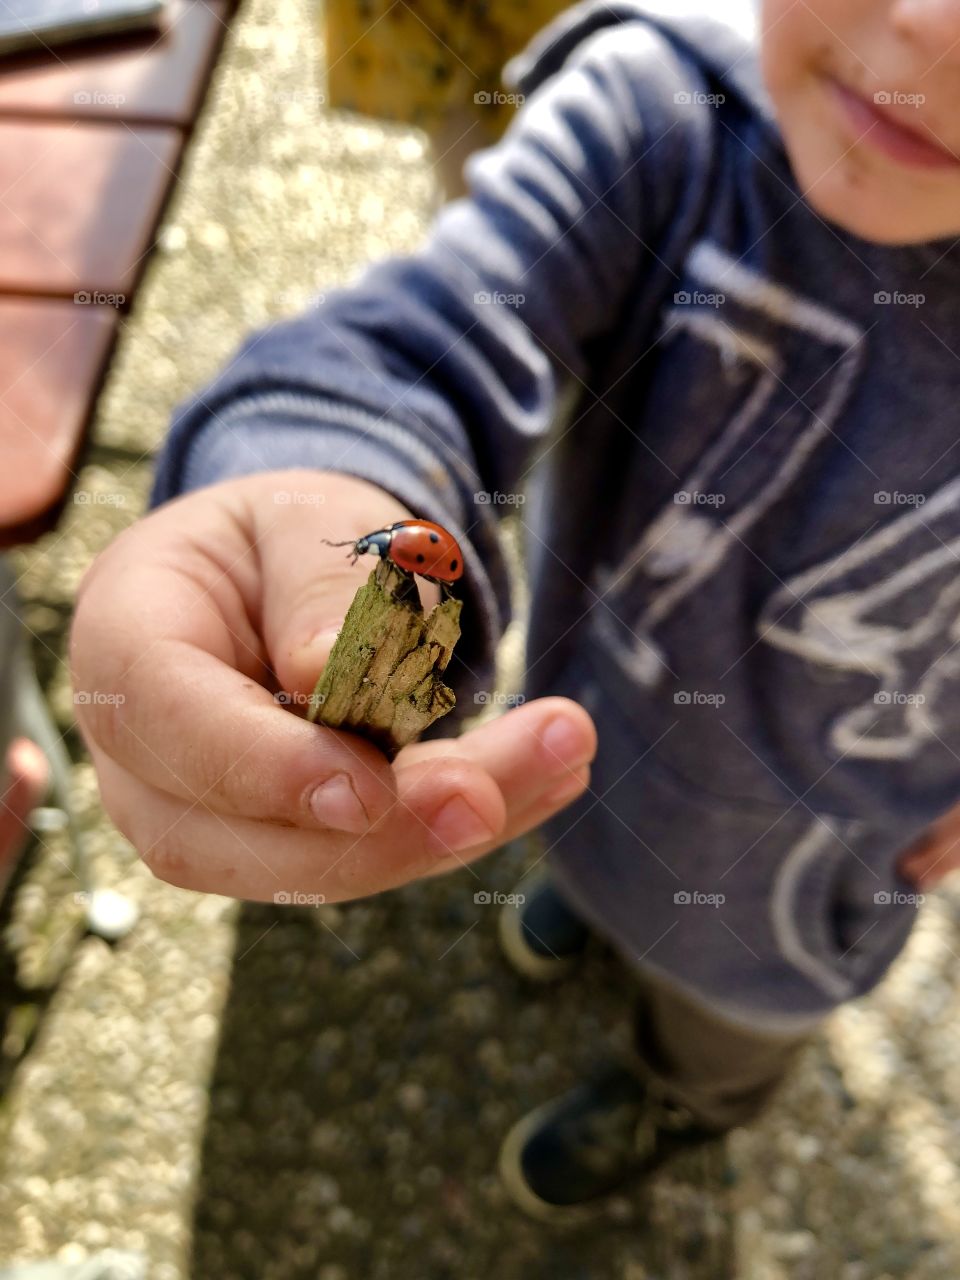 ohhhh ladybug 